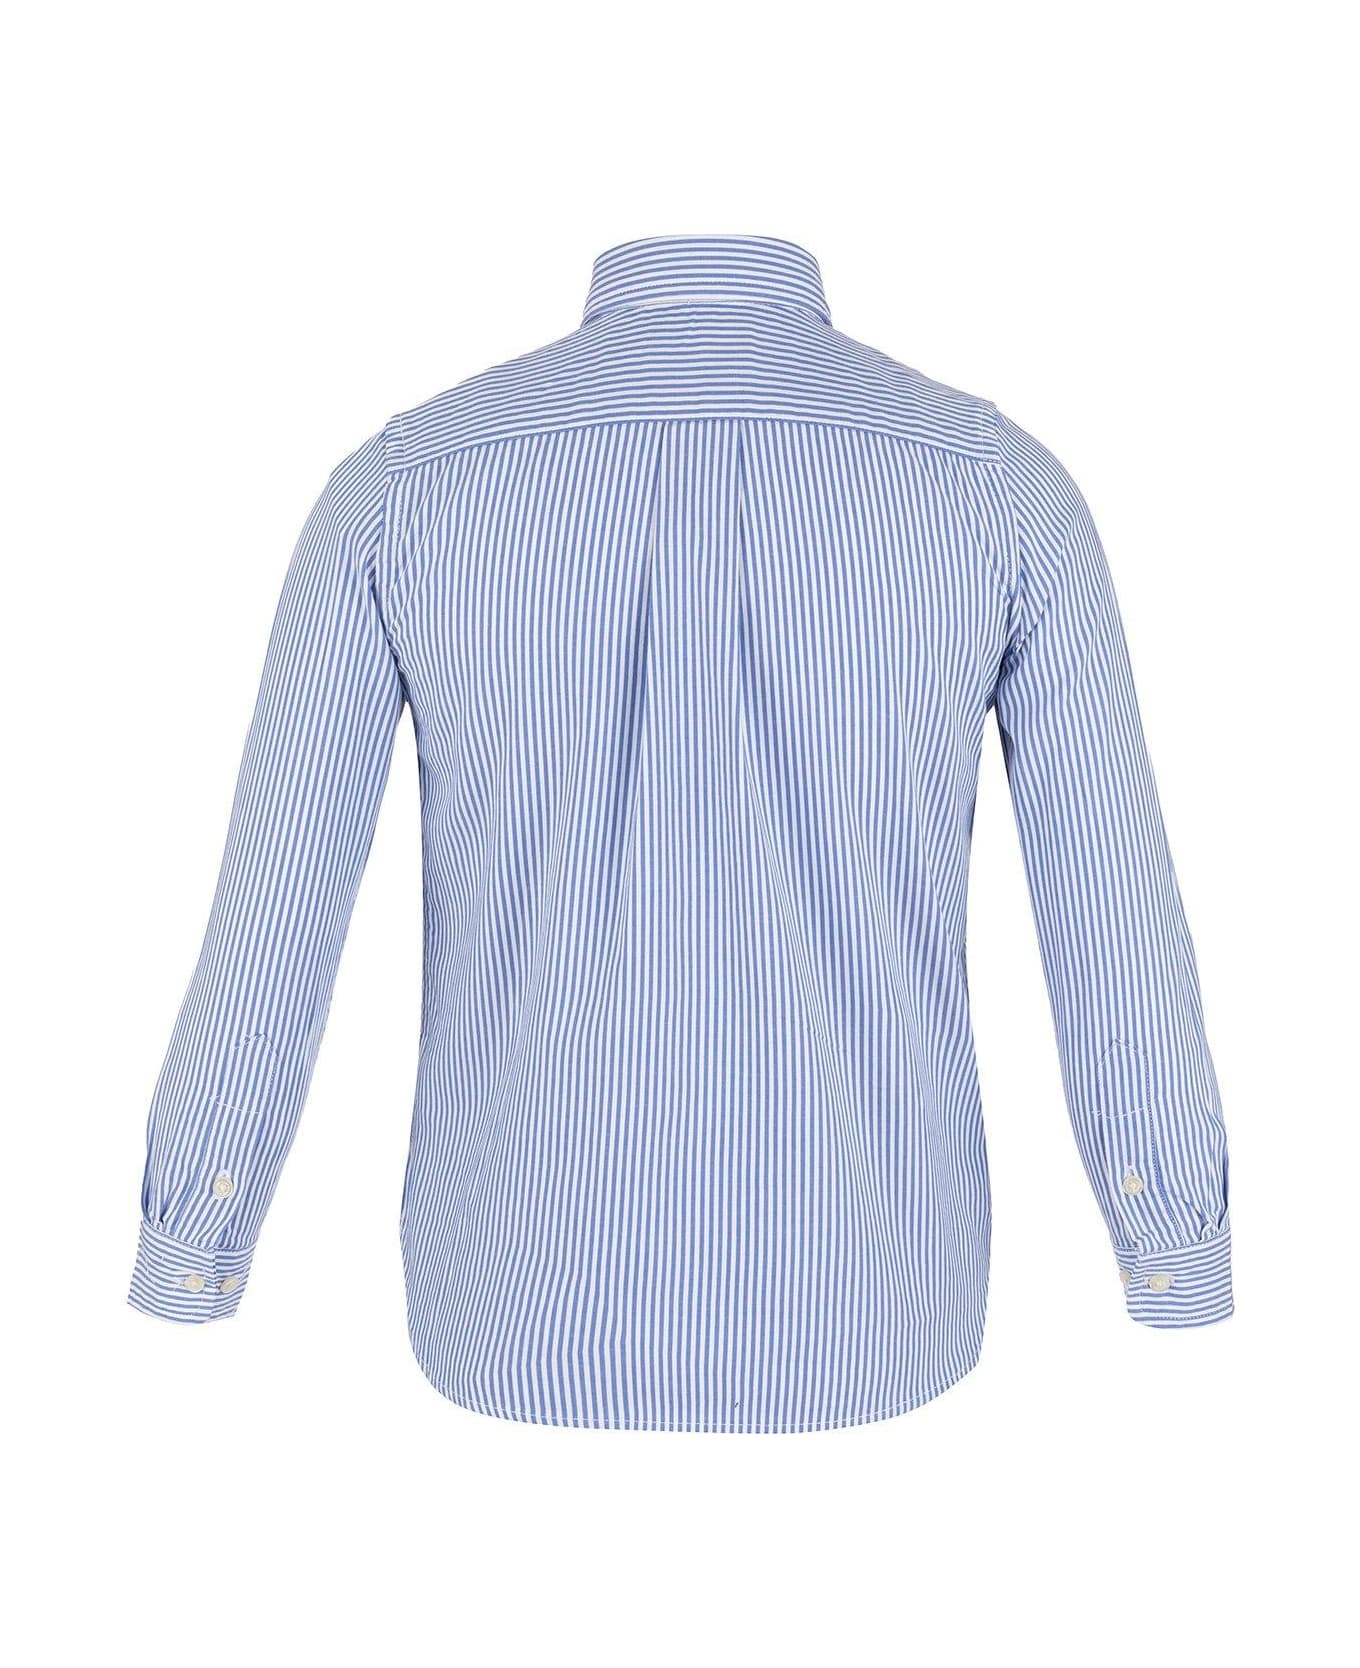 Ralph Lauren Striped Long-sleeved Shirt - Blue